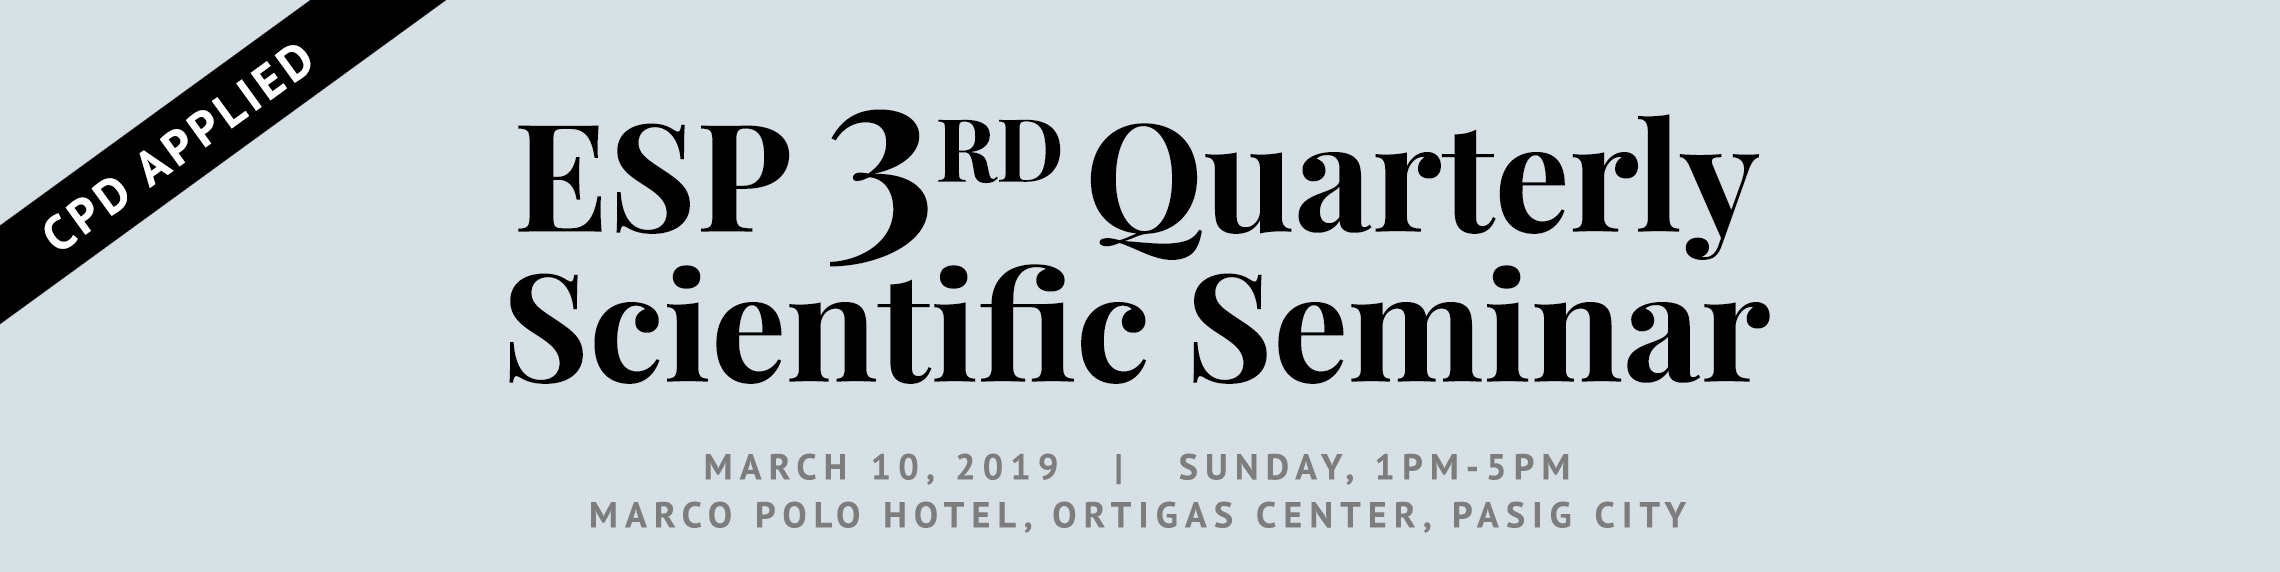 3rd ESP Quarterly Scientific Seminar 2019